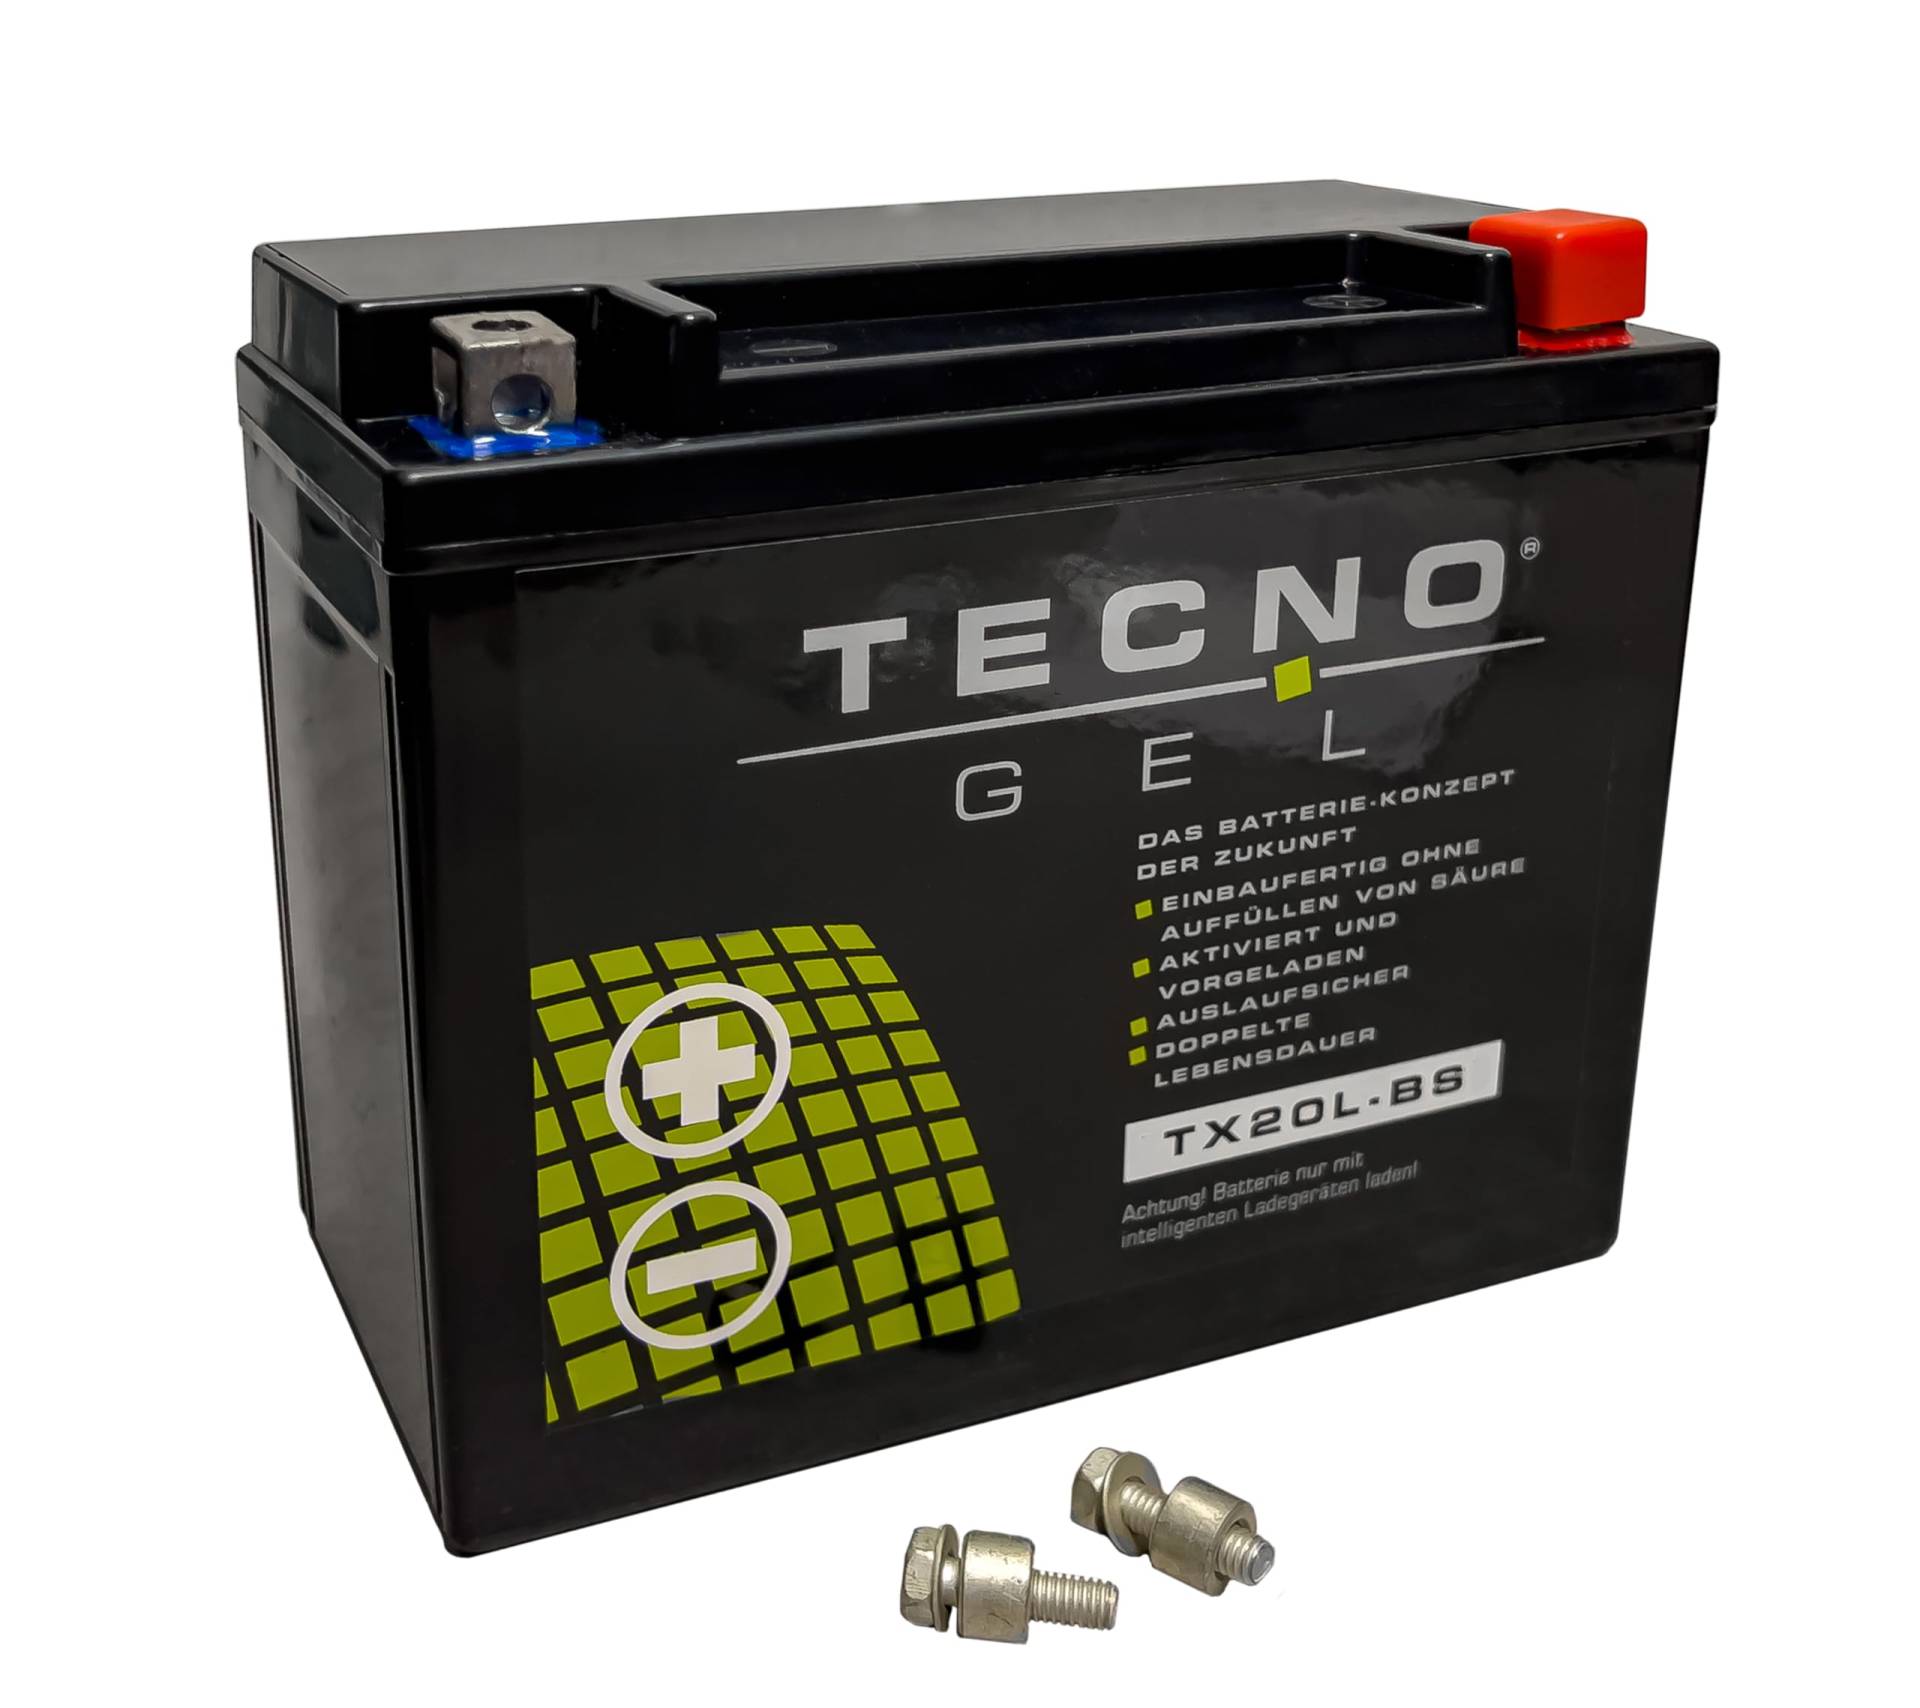 TECNO-GEL Motorrad-Batterie für YTX20L-BS für TRIUMPH Tropy 1215 u. SE 2013-2017, 12V Gel-Batterie 20Ah (DIN 82000), 175x87x155 mm von Wirth-Federn